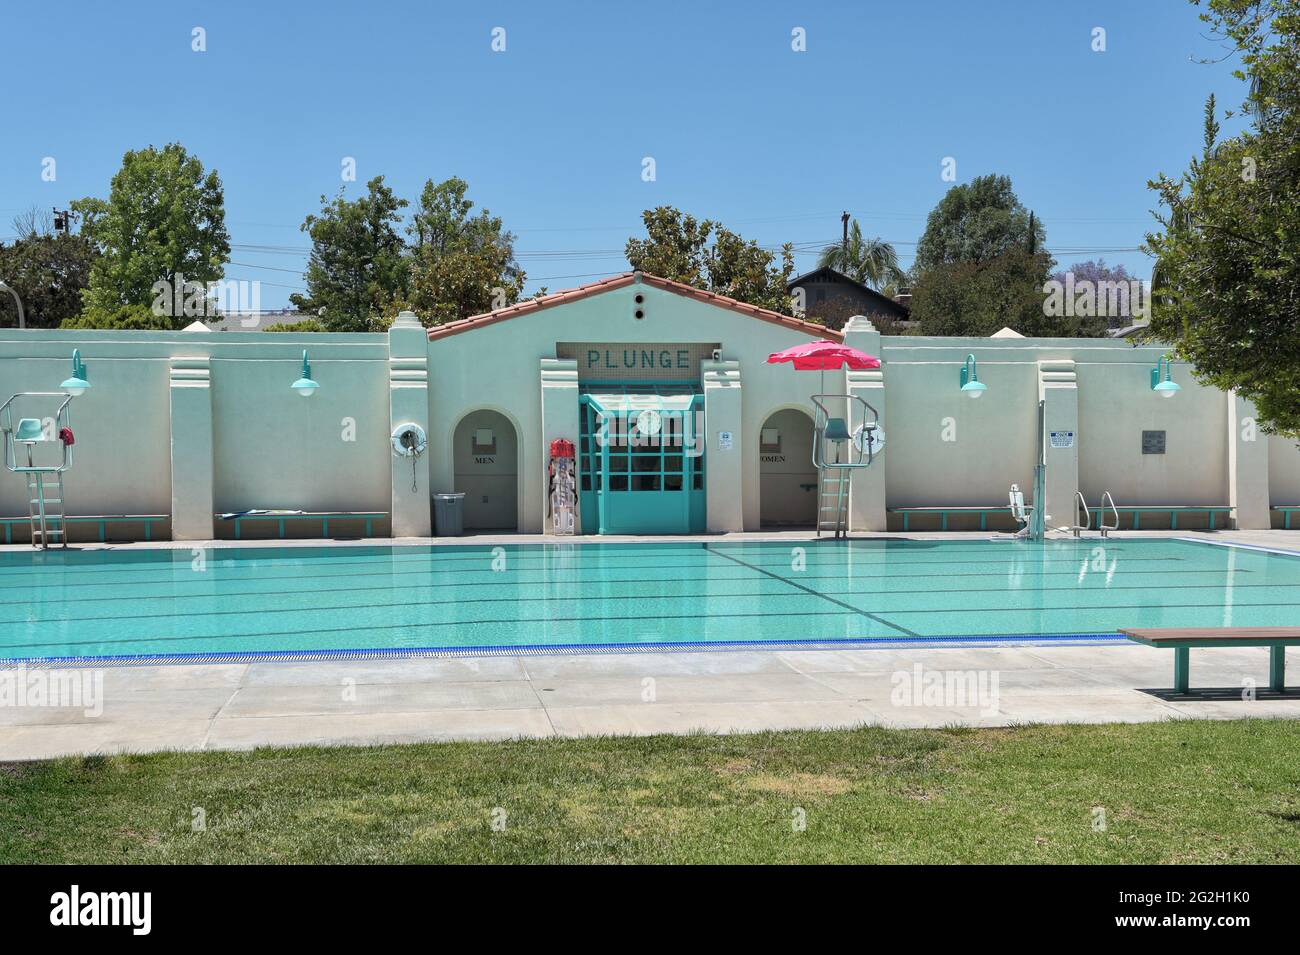 BREA, KALIFORNIEN - 9 JUN 2021: The Plunge, ein öffentliches Schwimmbad im City Hall Park. Stockfoto